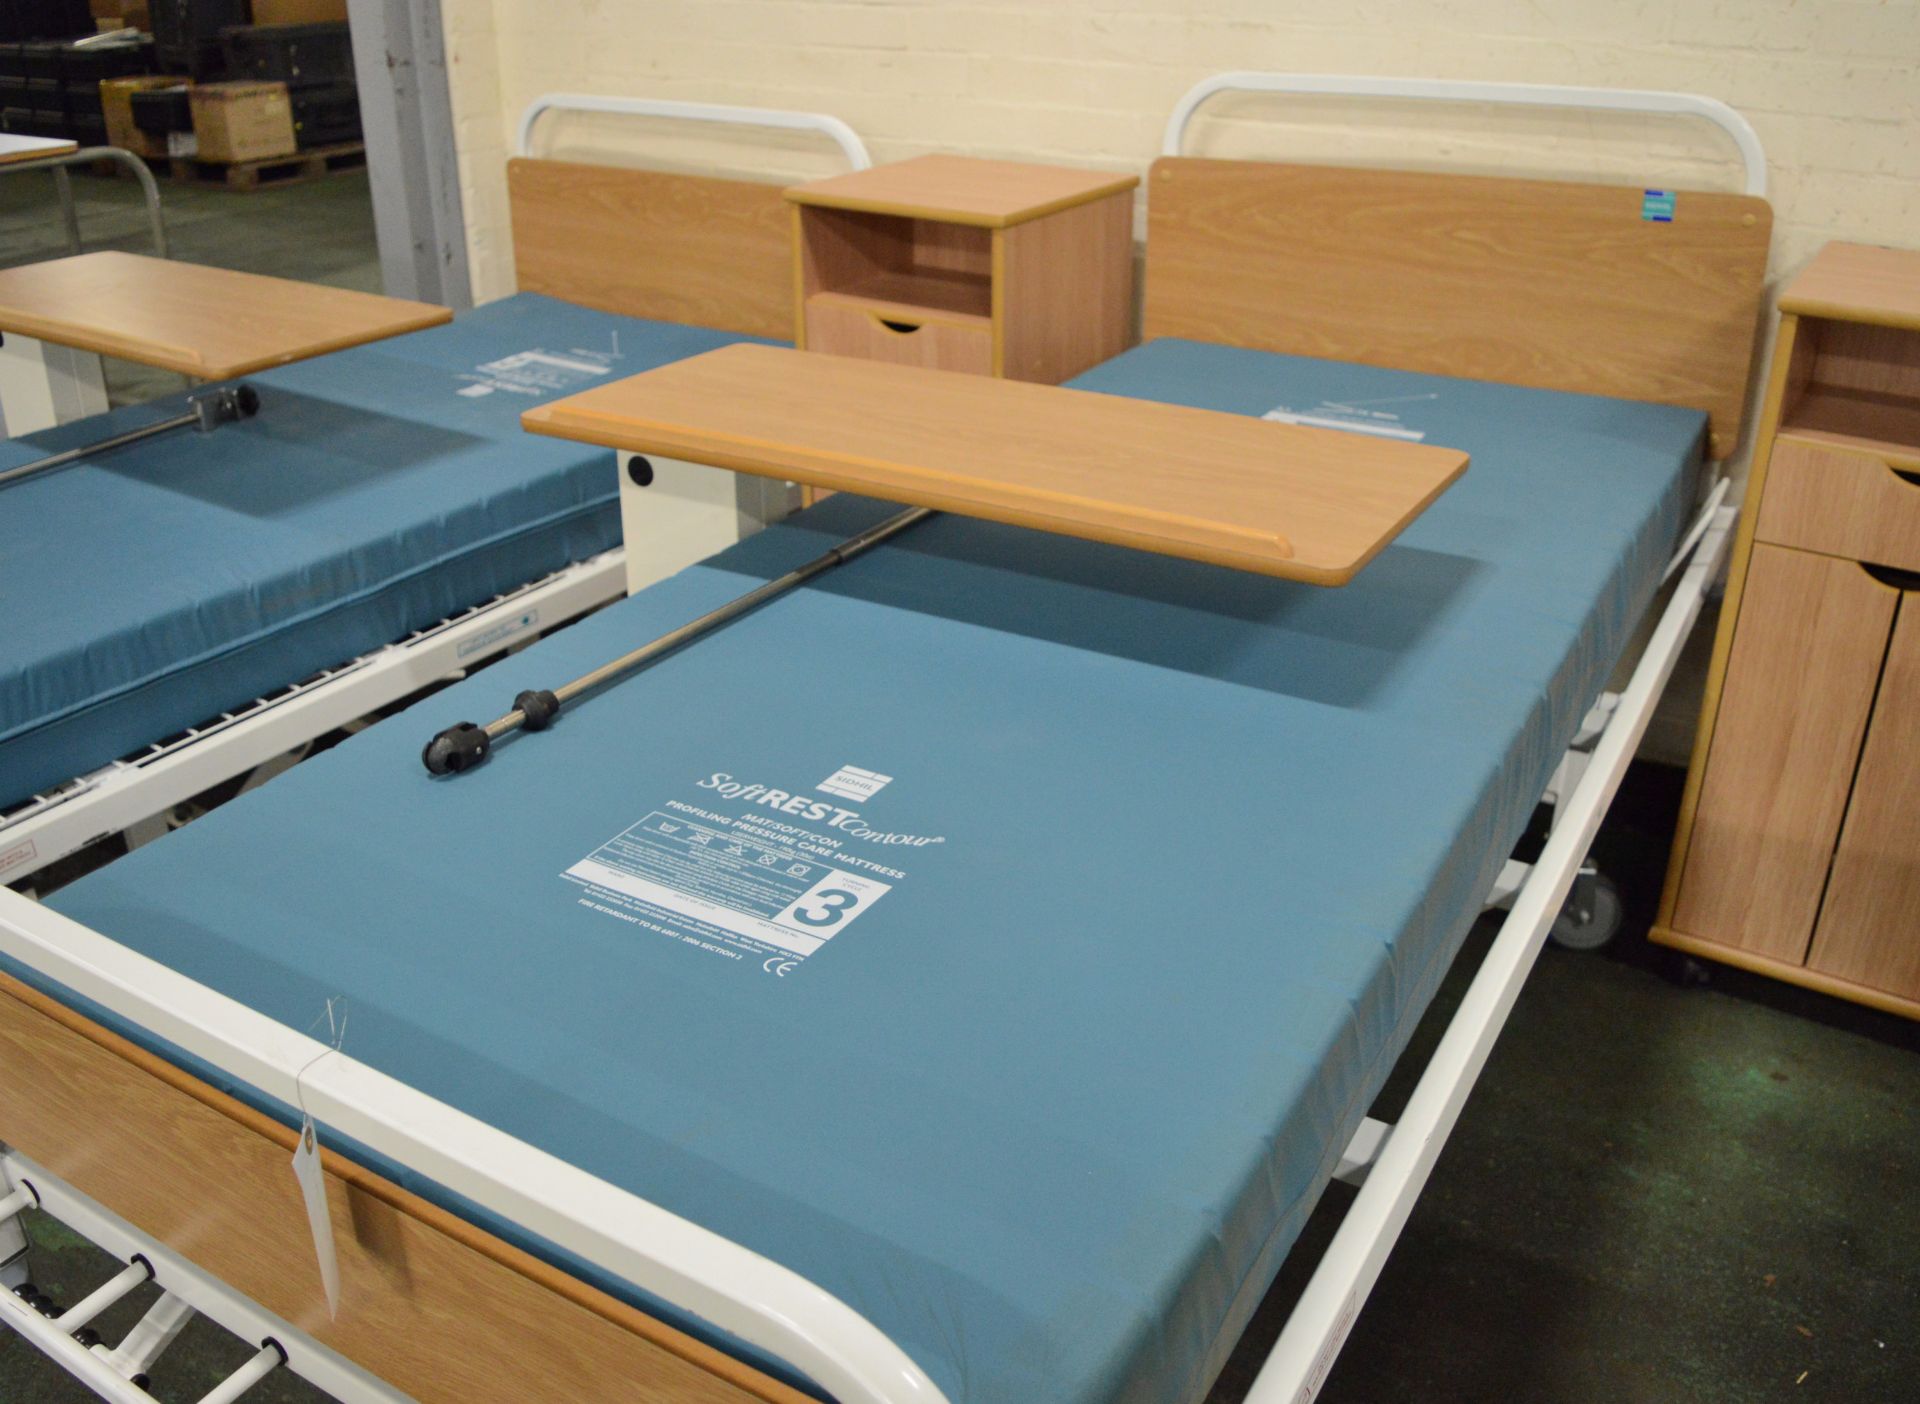 2x Hospital Bed & Furniture Sets. - Image 3 of 3